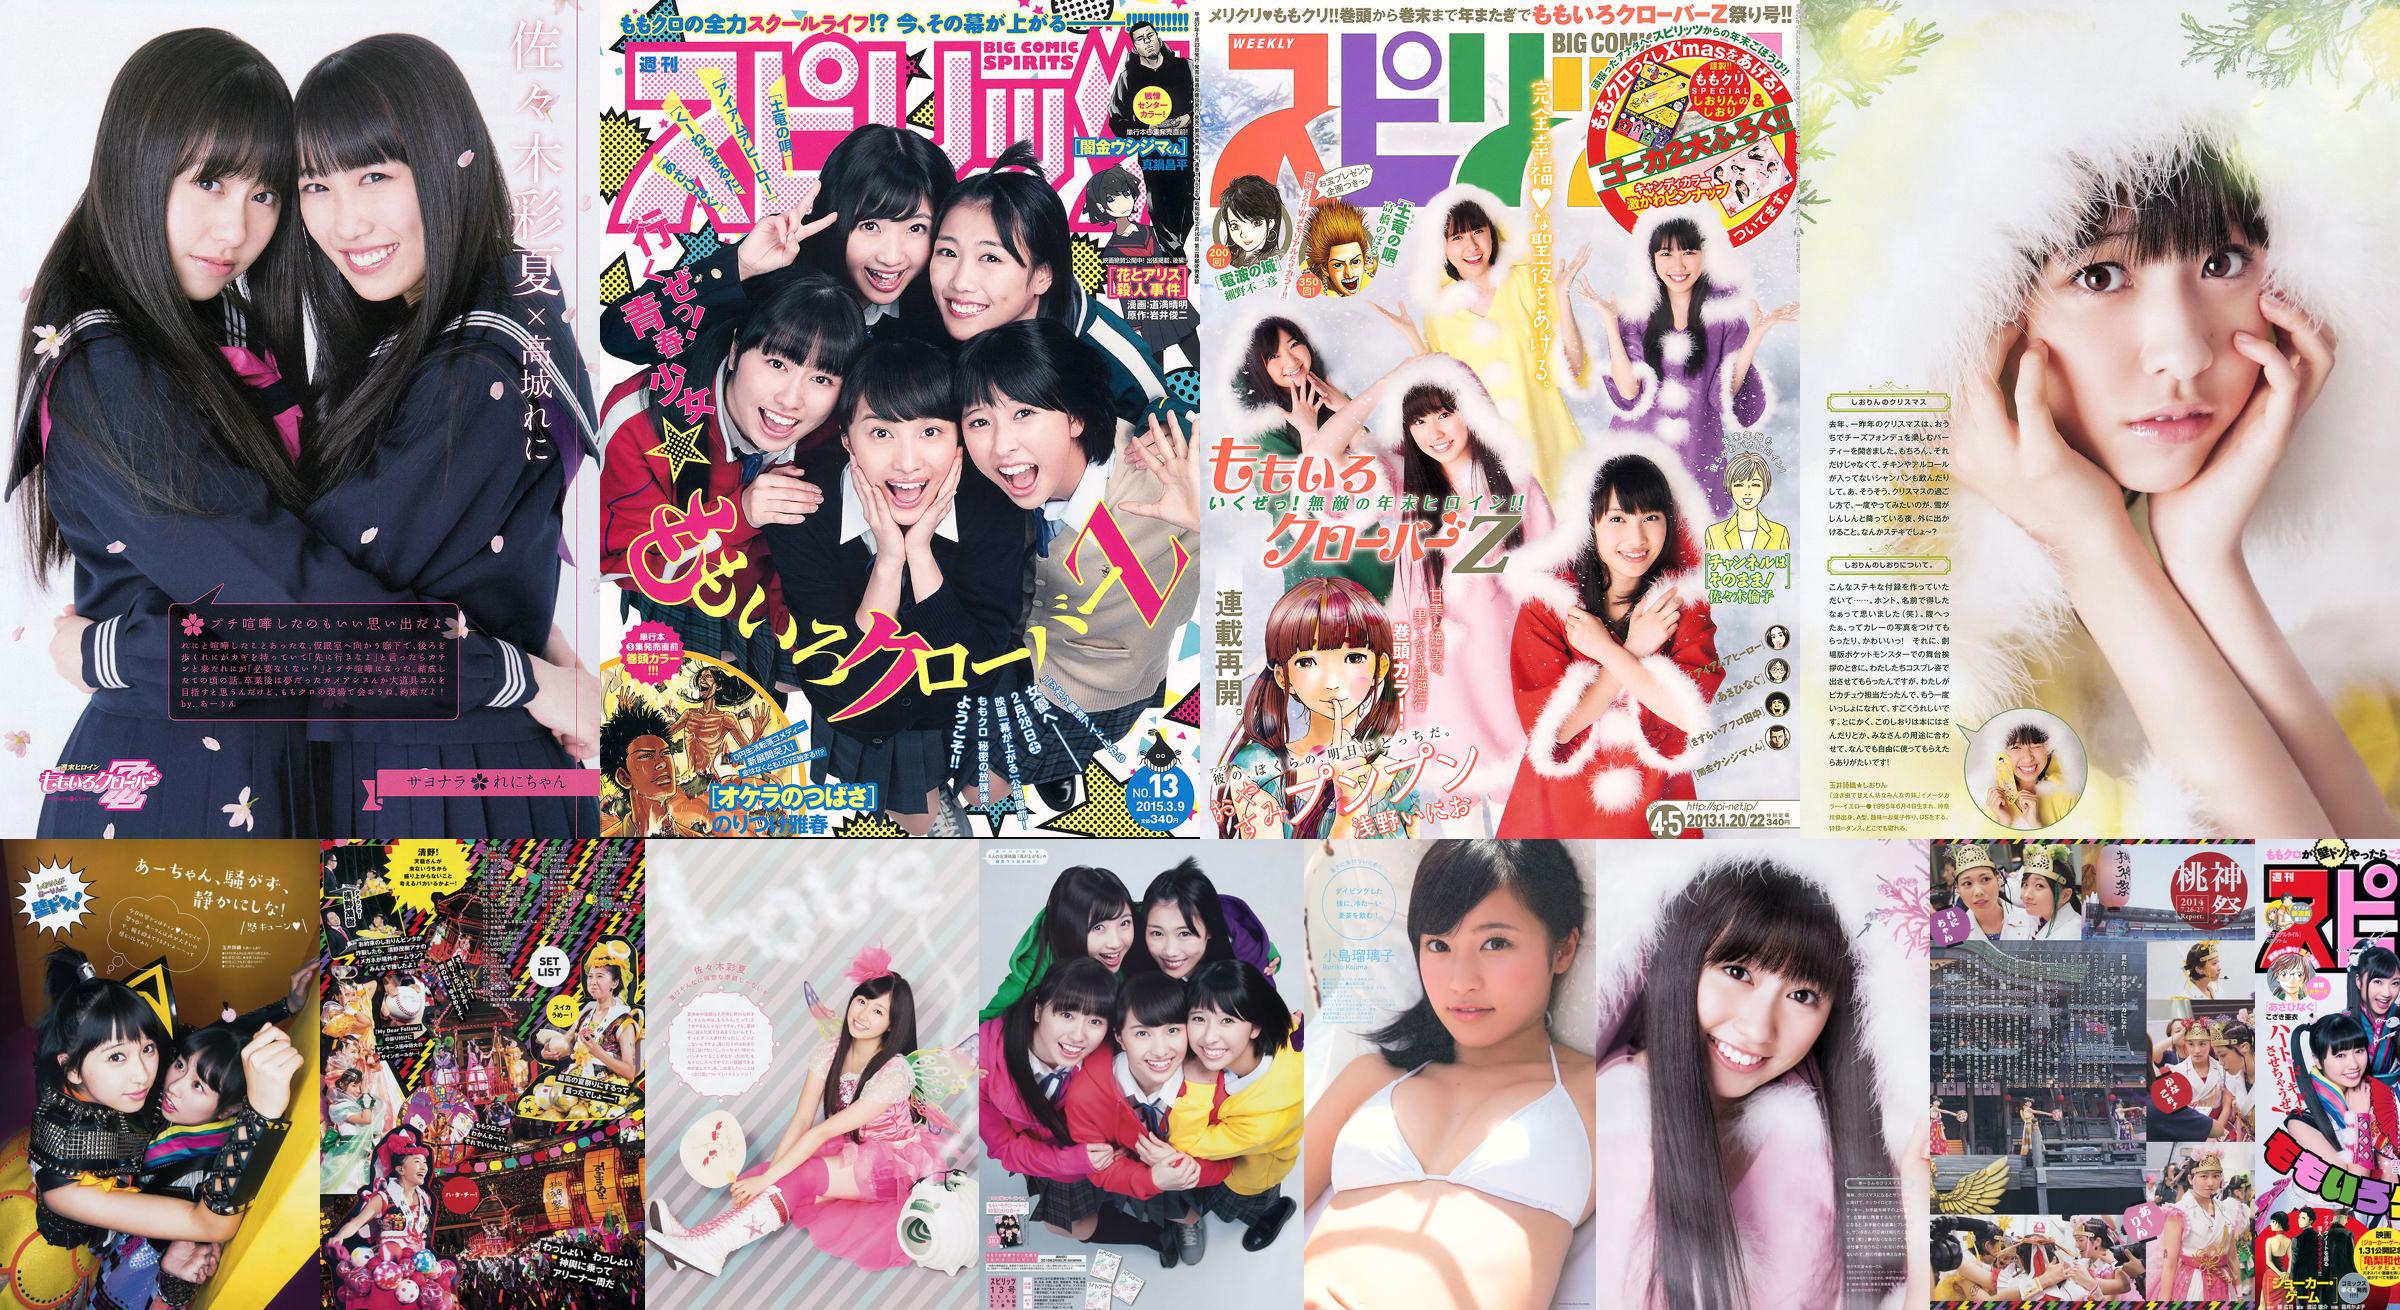 [Weekly Big Comic Spirits] Momoiro Clover Z 2014 Nr. 39 Foto No.312e68 Seite 1